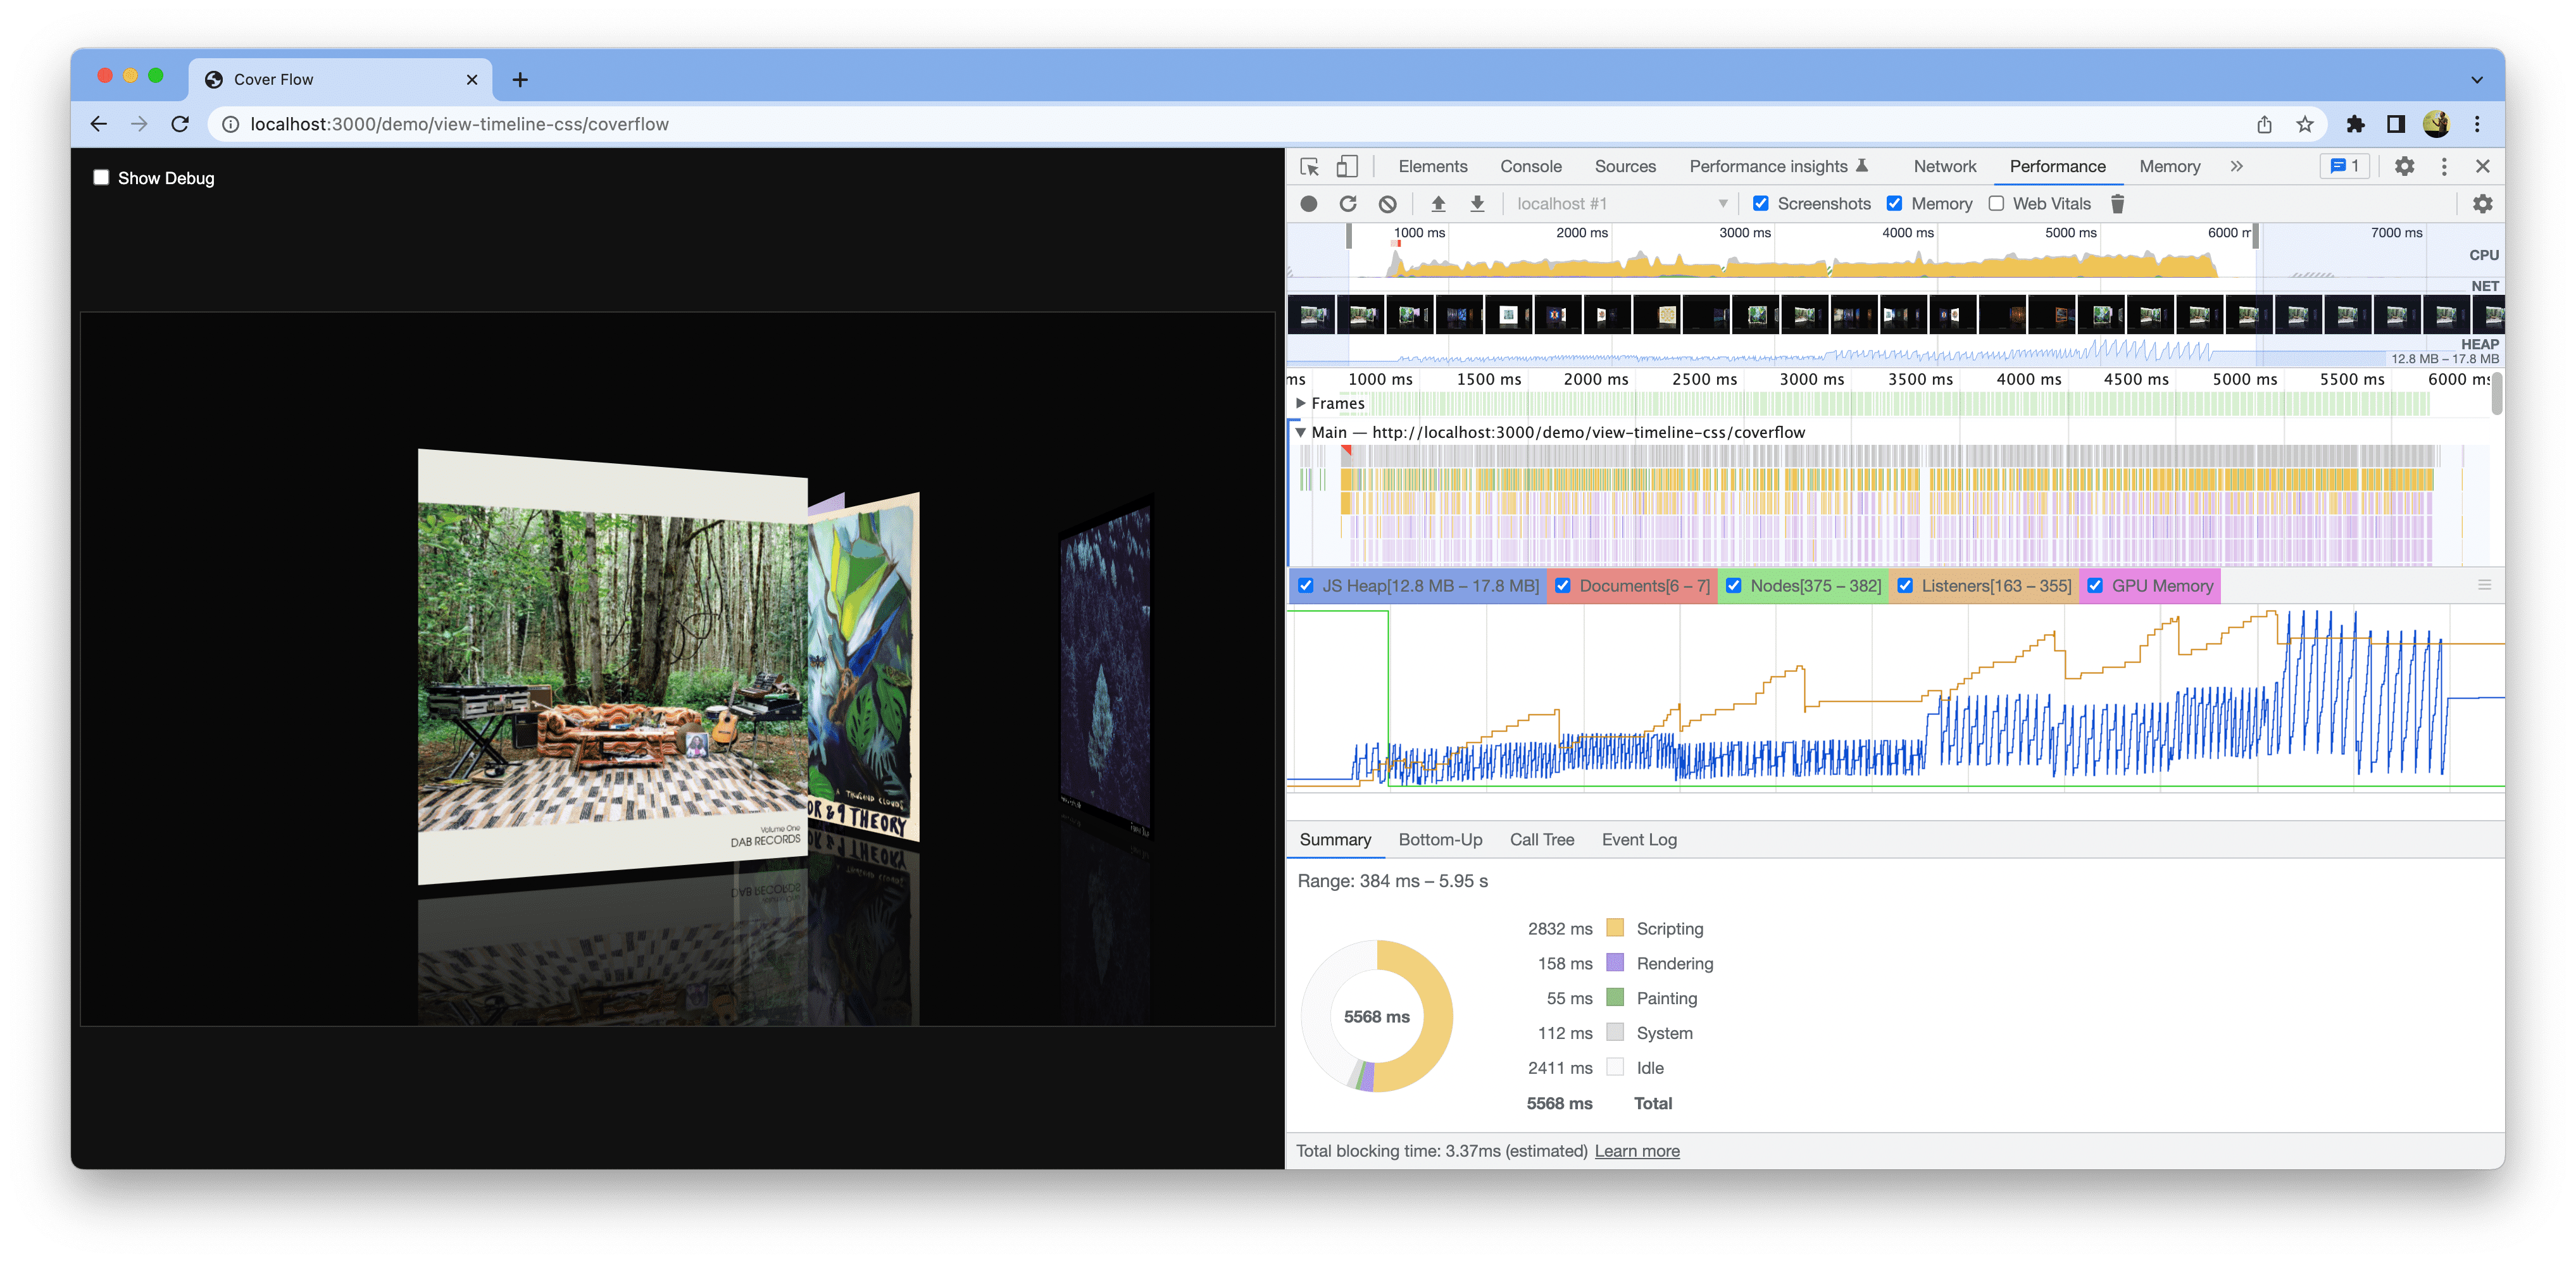 اسکرین شات از یک نسخه نمایشی باز در کروم. ابزارهای توسعه دهنده باز هستند و یک اندازه گیری عملکرد پایه را نشان می دهند.